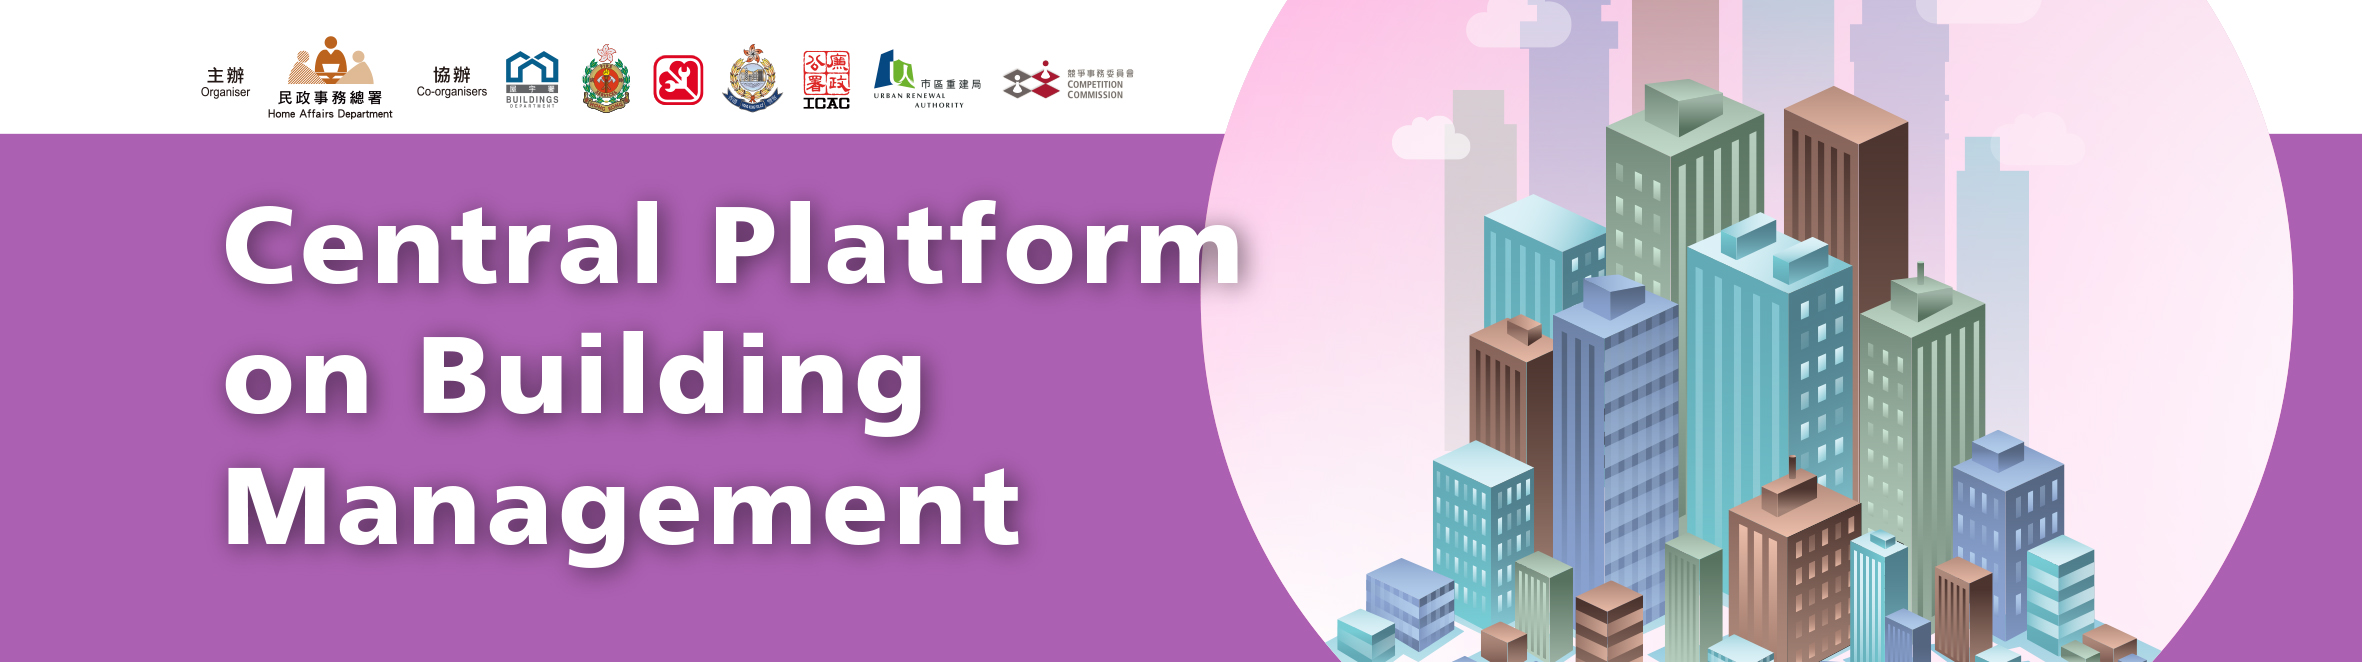 Central Platform on Building Management